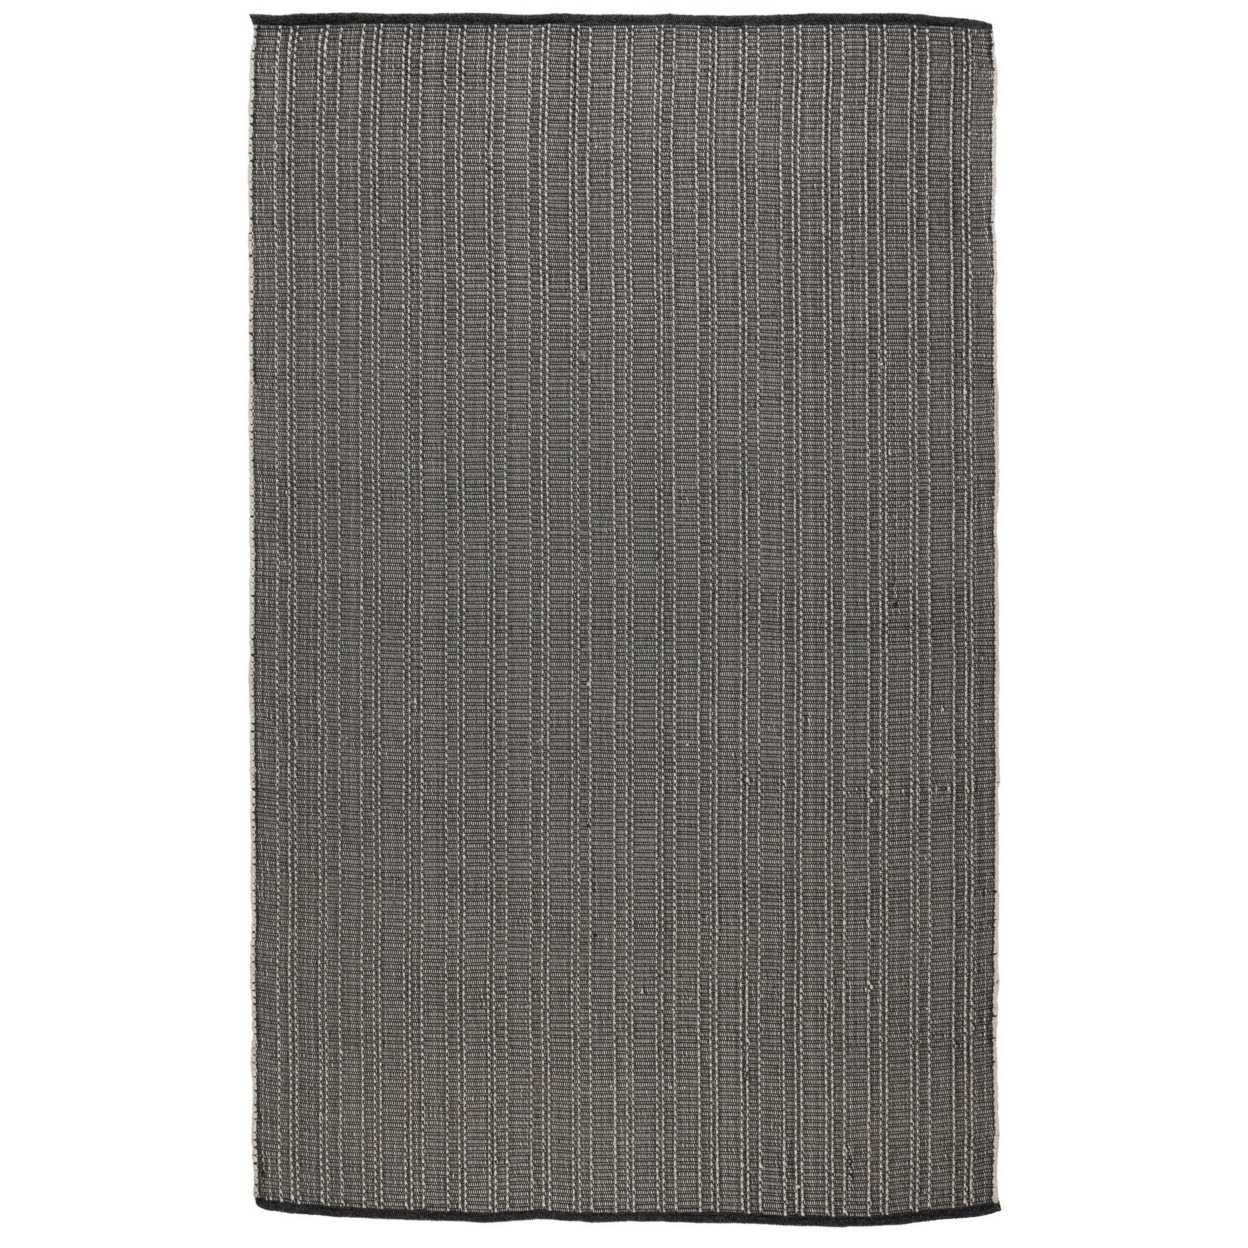 Leah 5 X 8 Indoor Outdoor Area Rug, Handwoven Classic Texture Charcoal Gray- Saltoro Sherpi